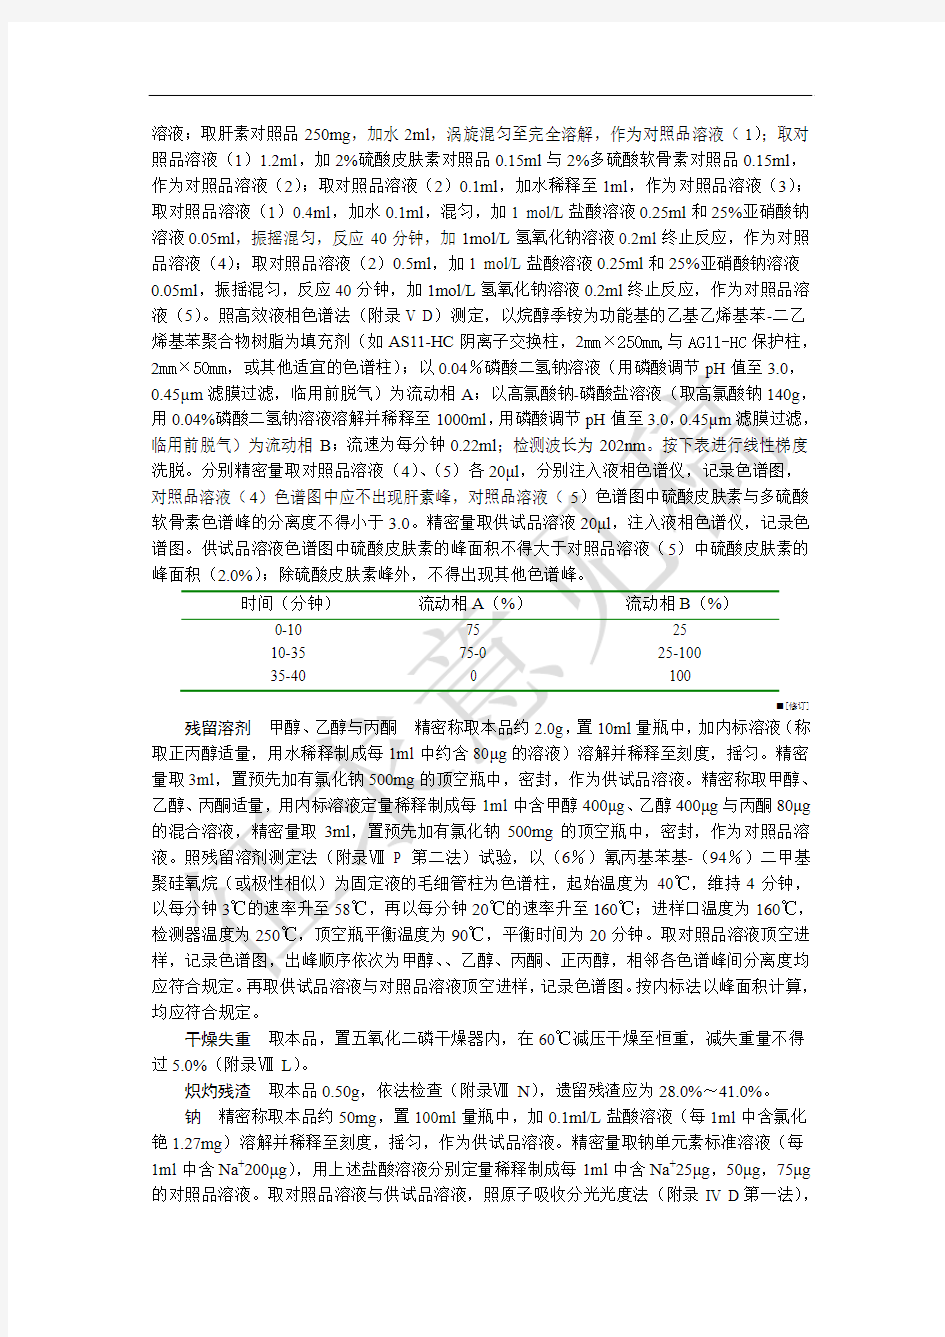 肝素钠(15版中国药典公示稿)